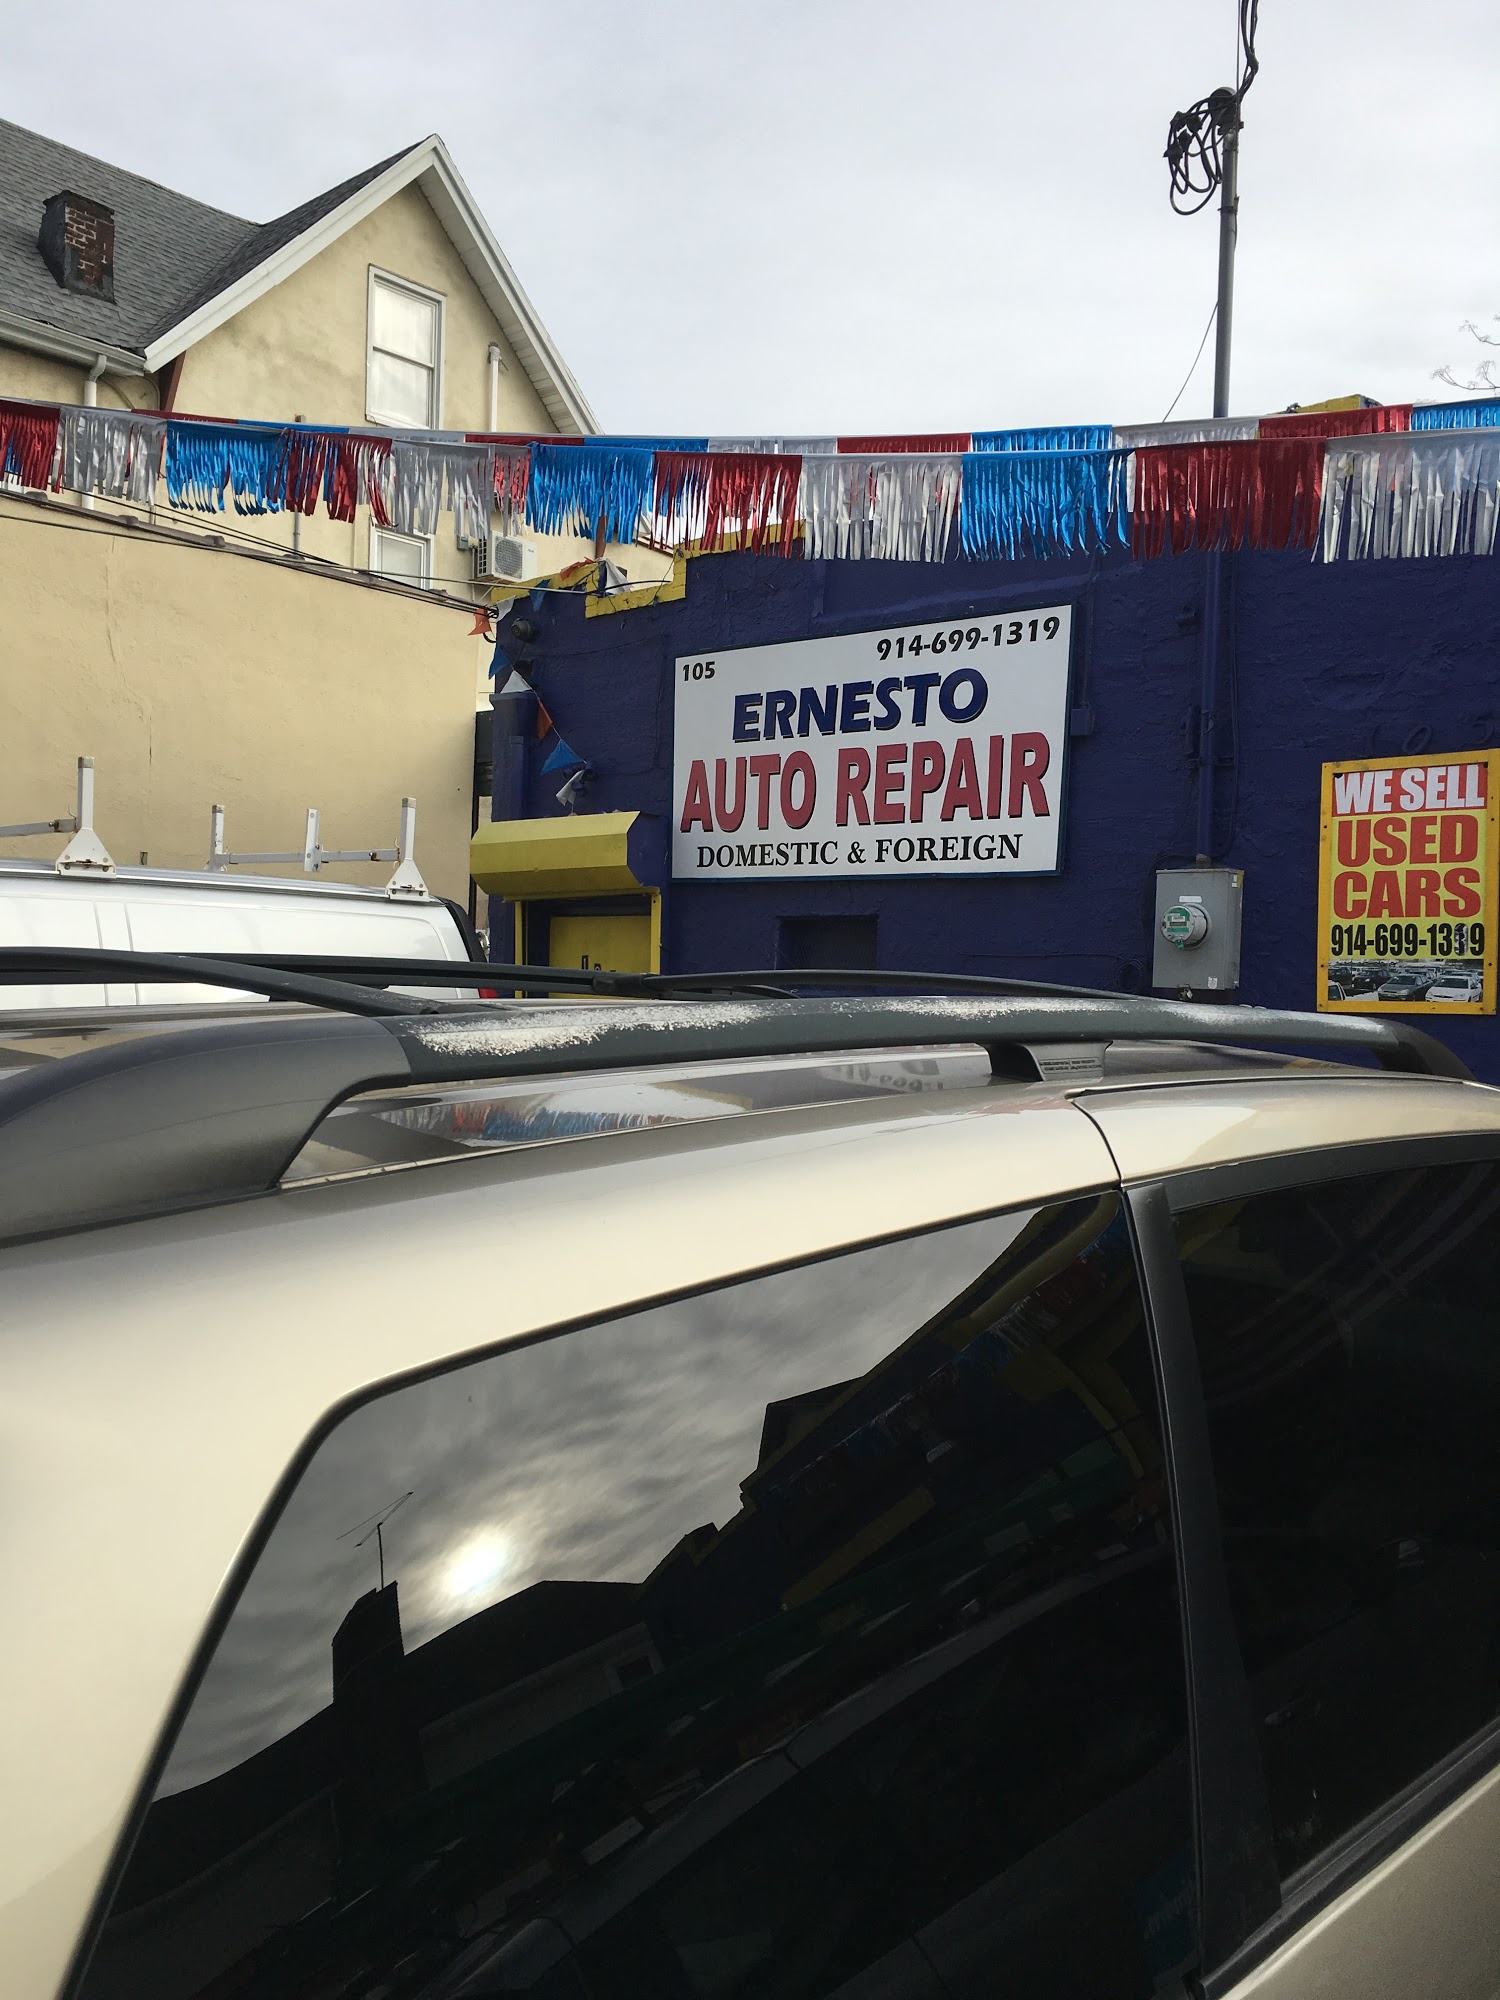 Ernesto's Auto Repair Corporation